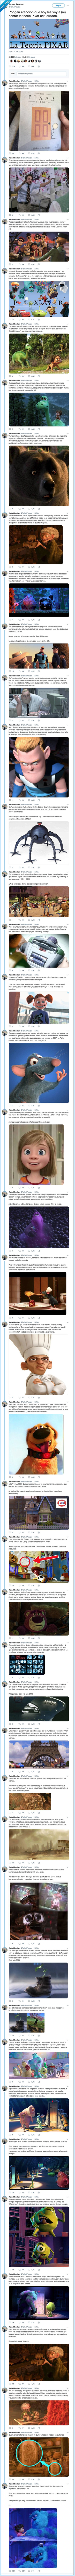 510180 - La teoría de las conexiones de Pixar que te volará la cabeza, por @RafaelPoulain